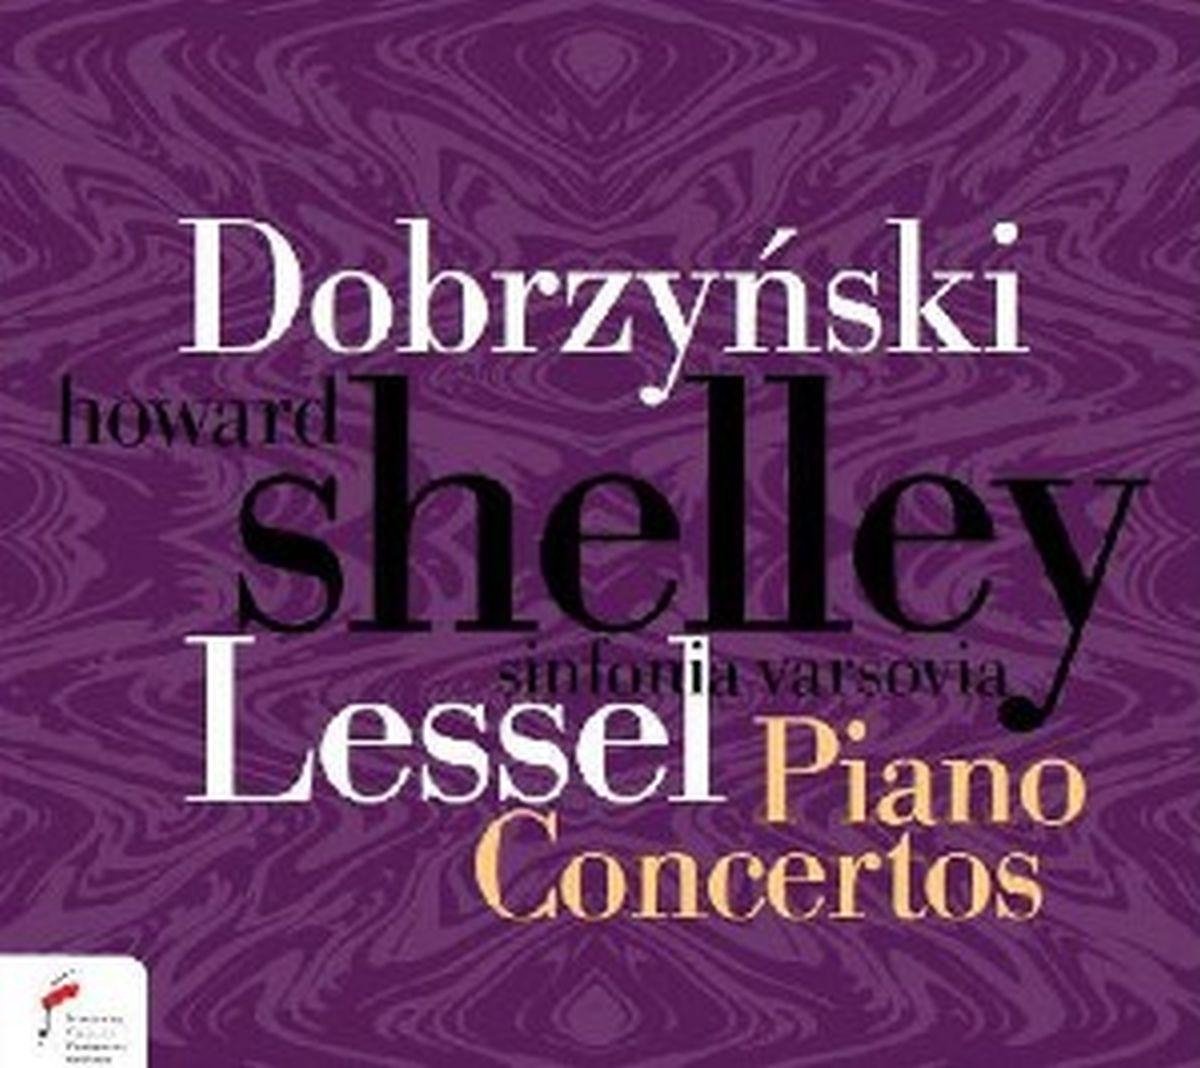 Piano Concertos - Shelley